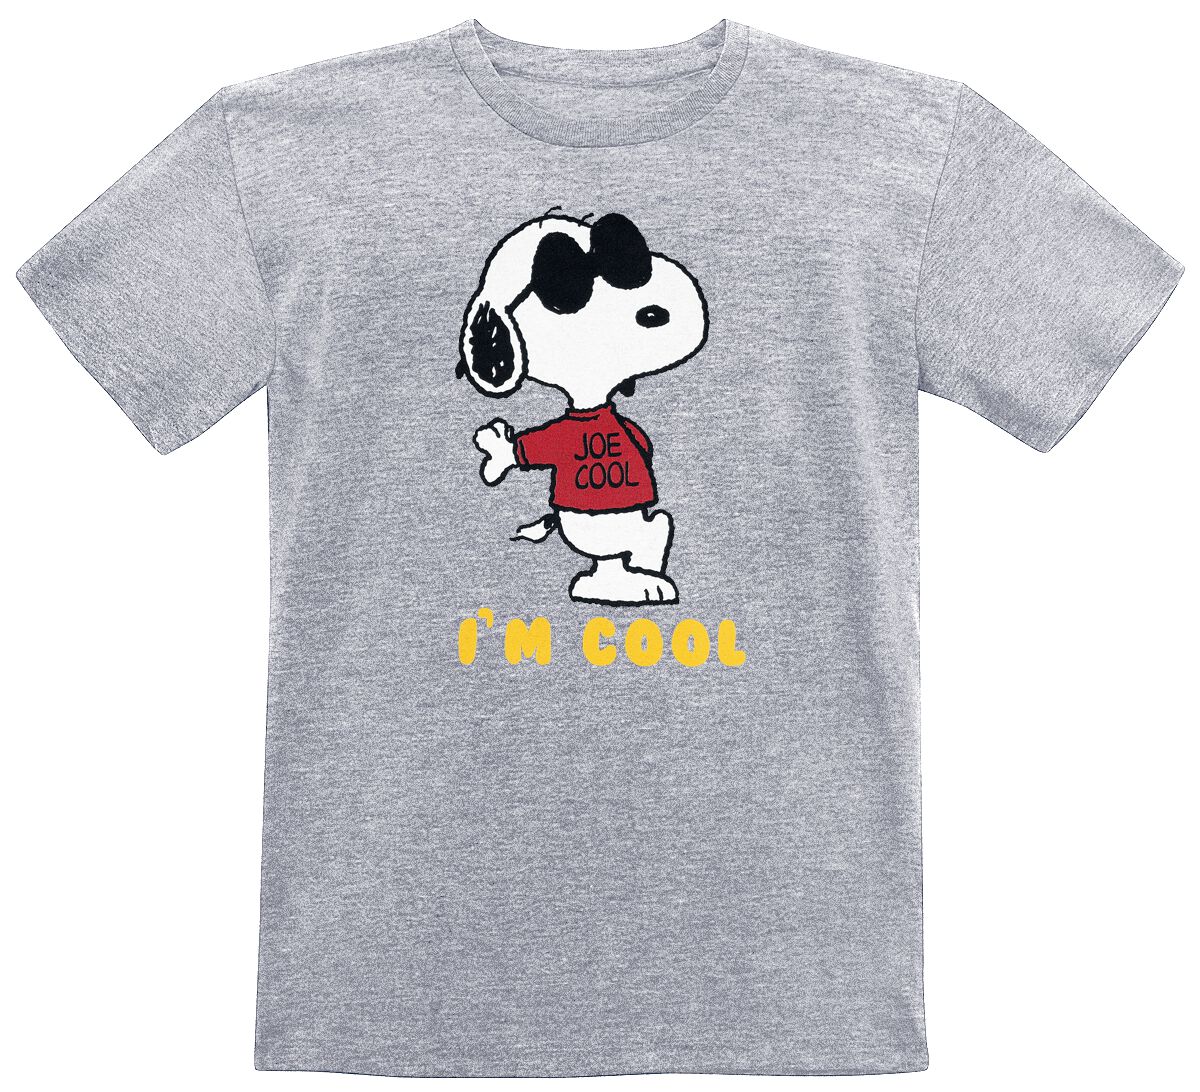 Peanuts Kids - I'm Cool T-Shirt mottled grey